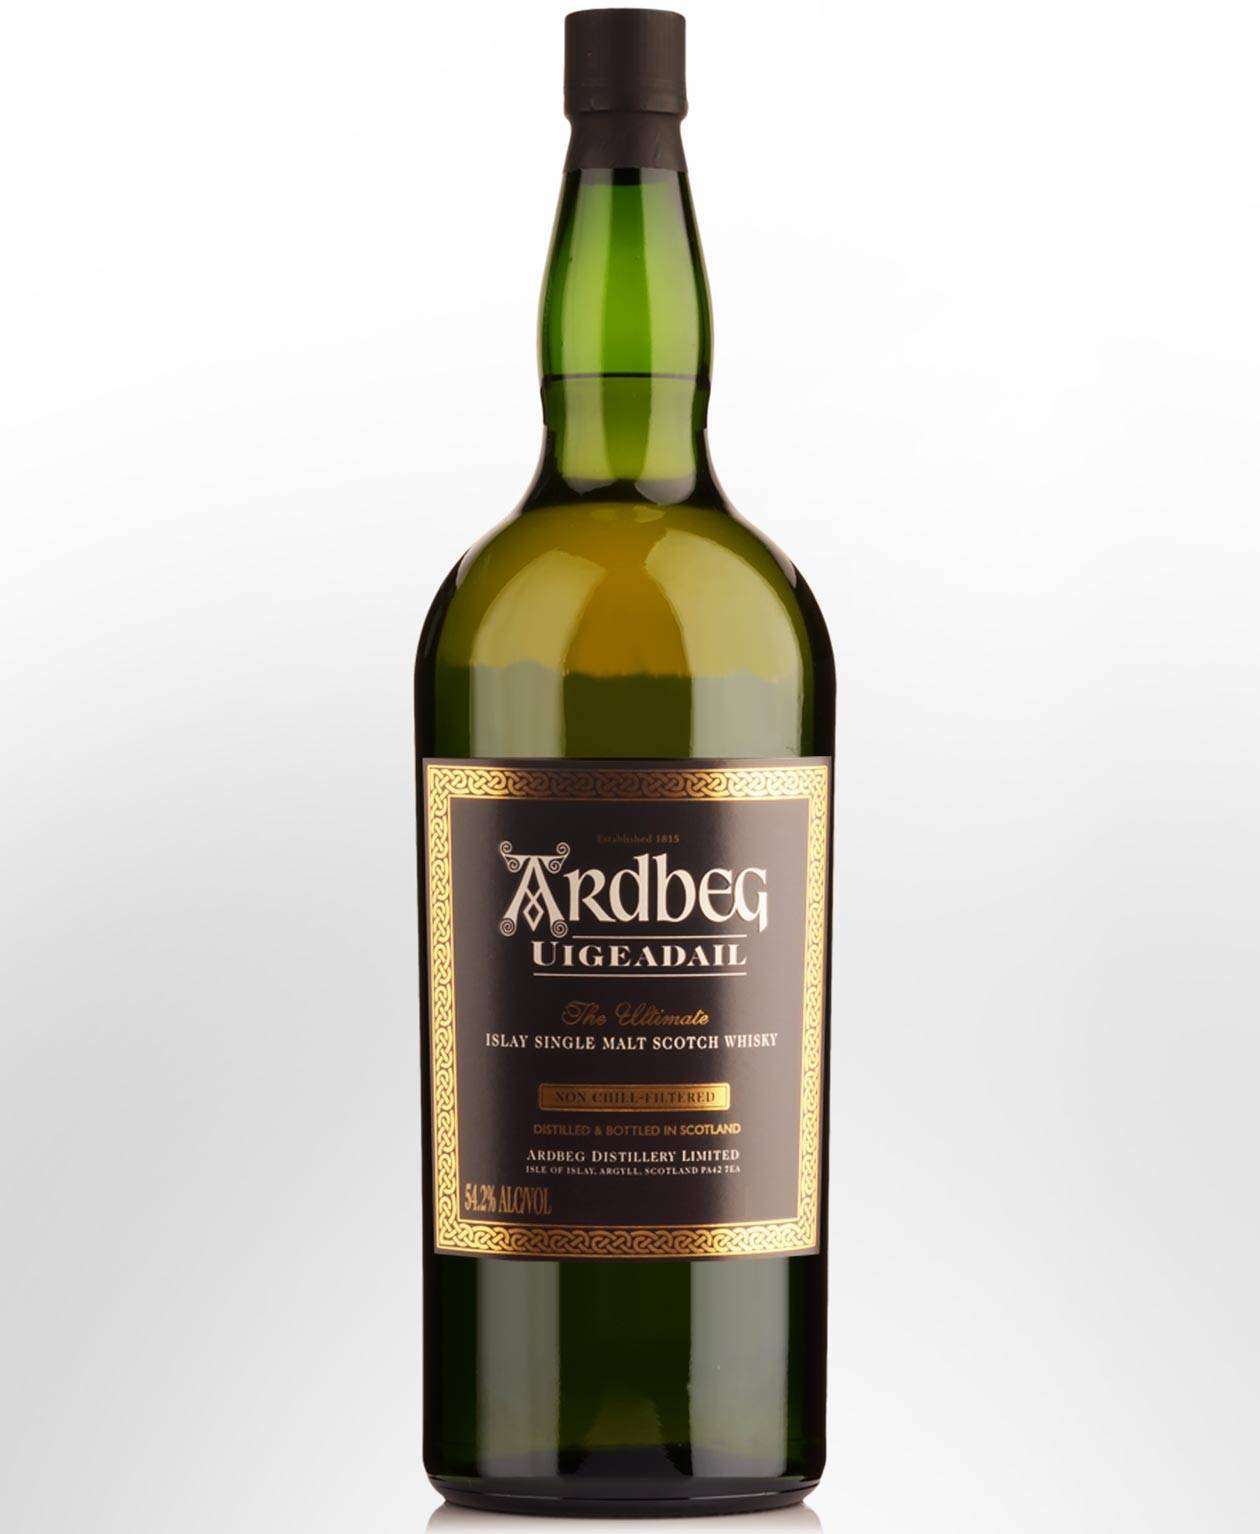 Популярный шотландский виски ардбег: краткое описание, состав, отзывы, цена